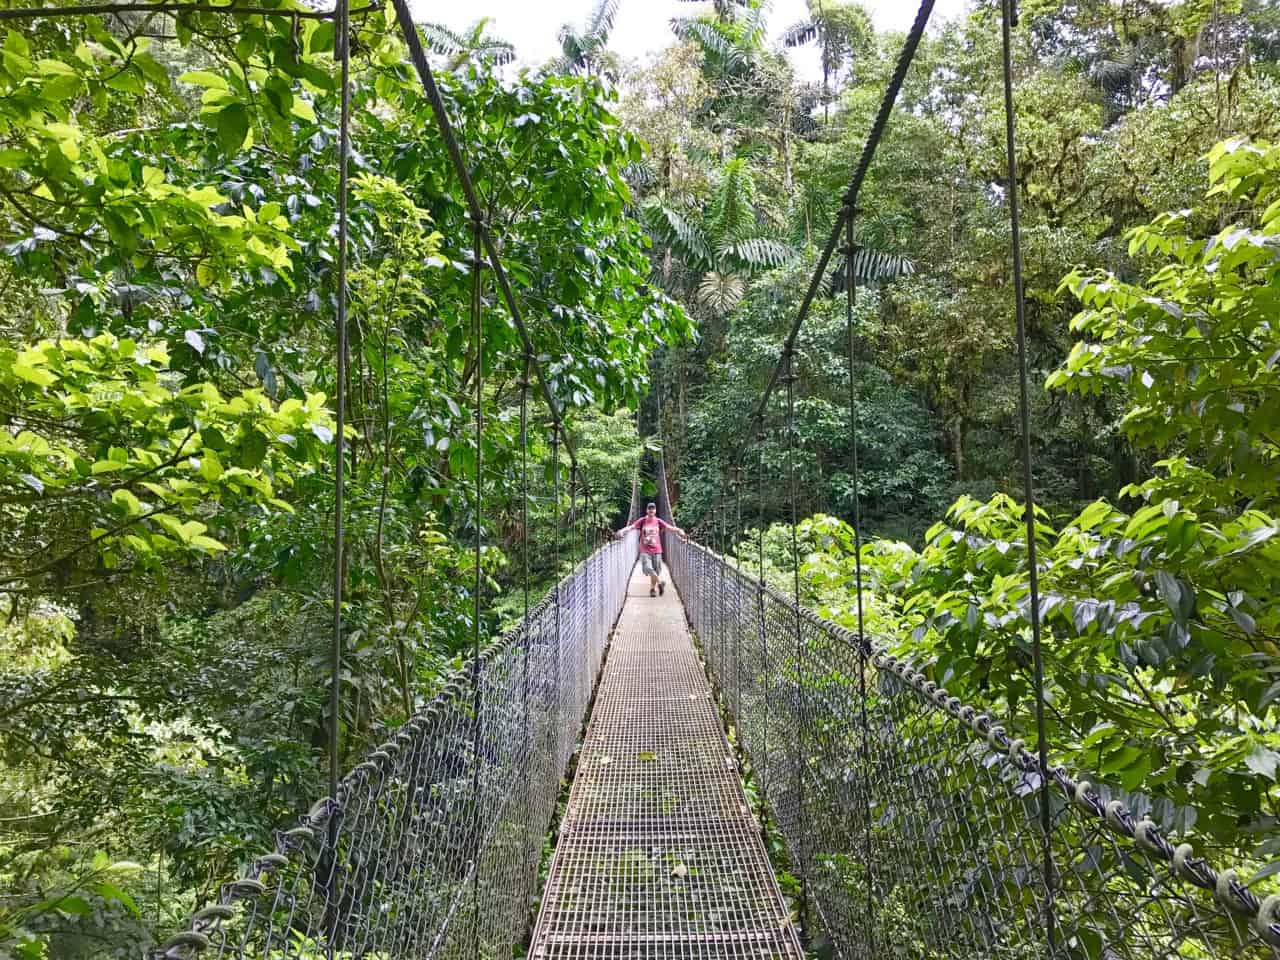 John steht auf einer Hängebrücke über dem Baldachin in Mistico, einem Park in Costa Rica.